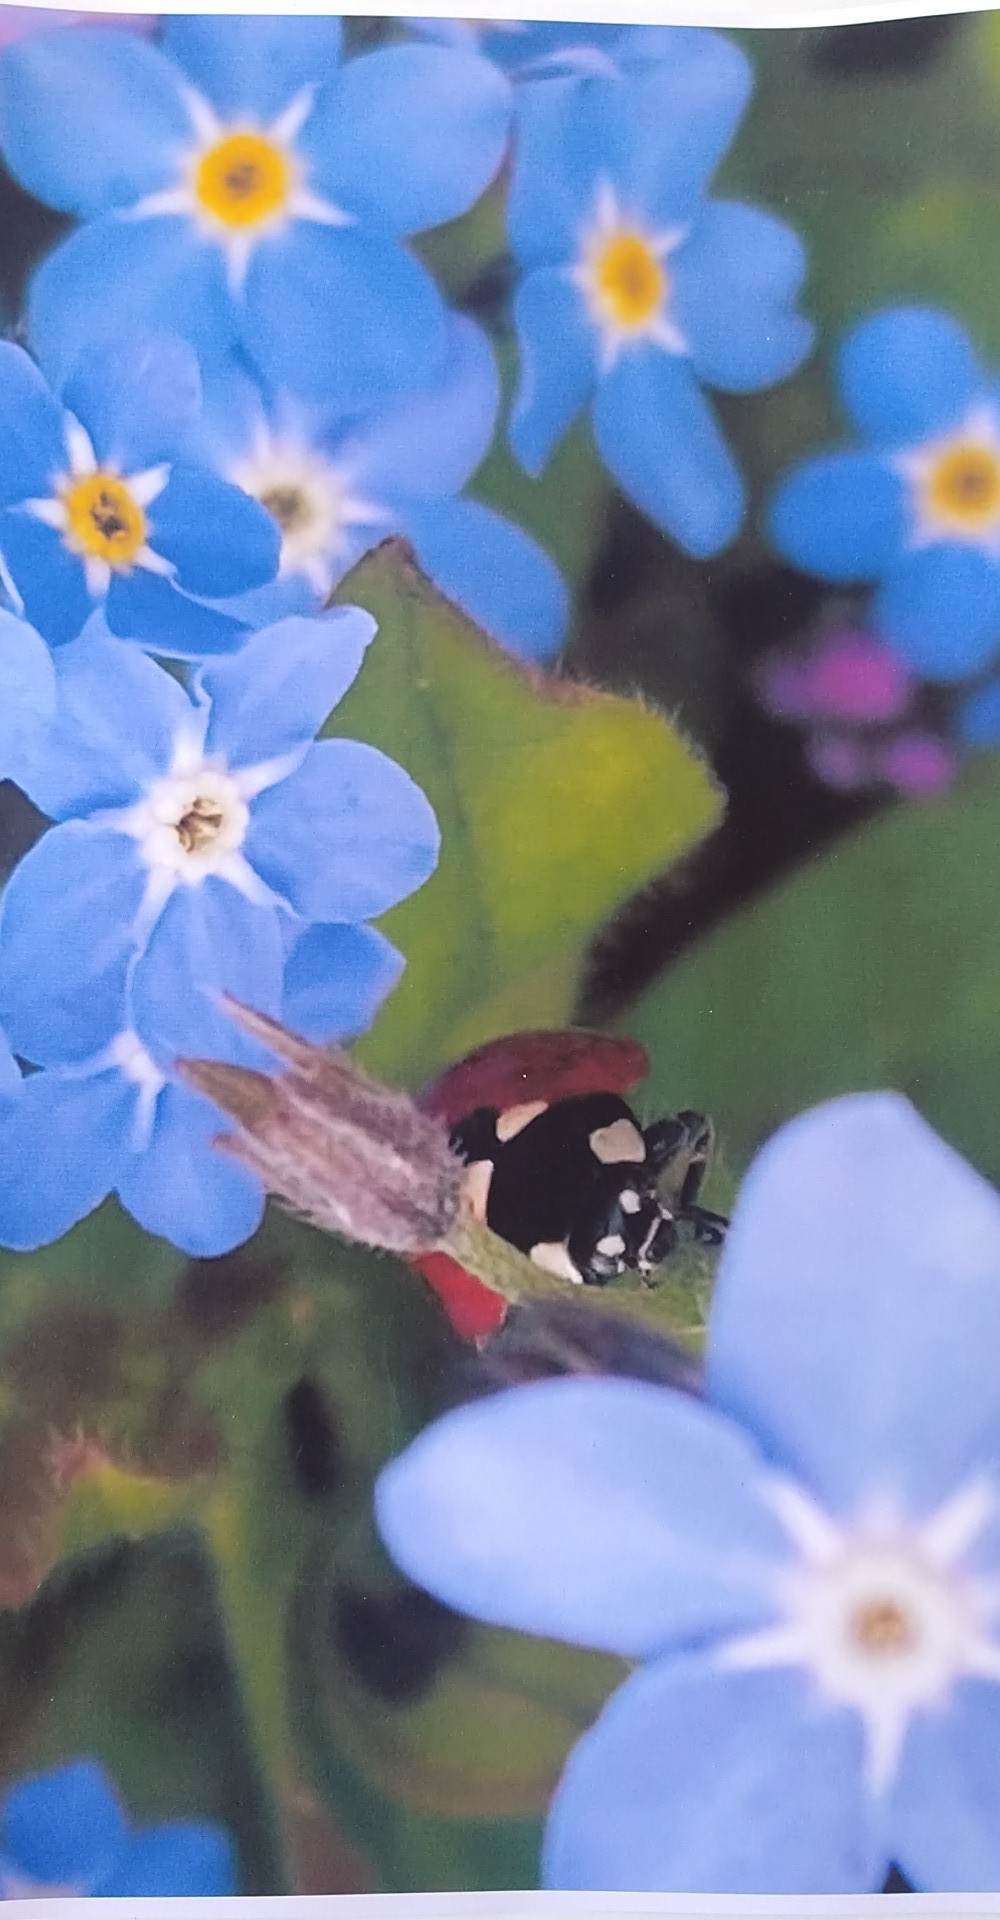 Na pierwszym planie biedronka na niebieskich kwiatach.
Autor Stanisław Dobrzewiński kl. 4d